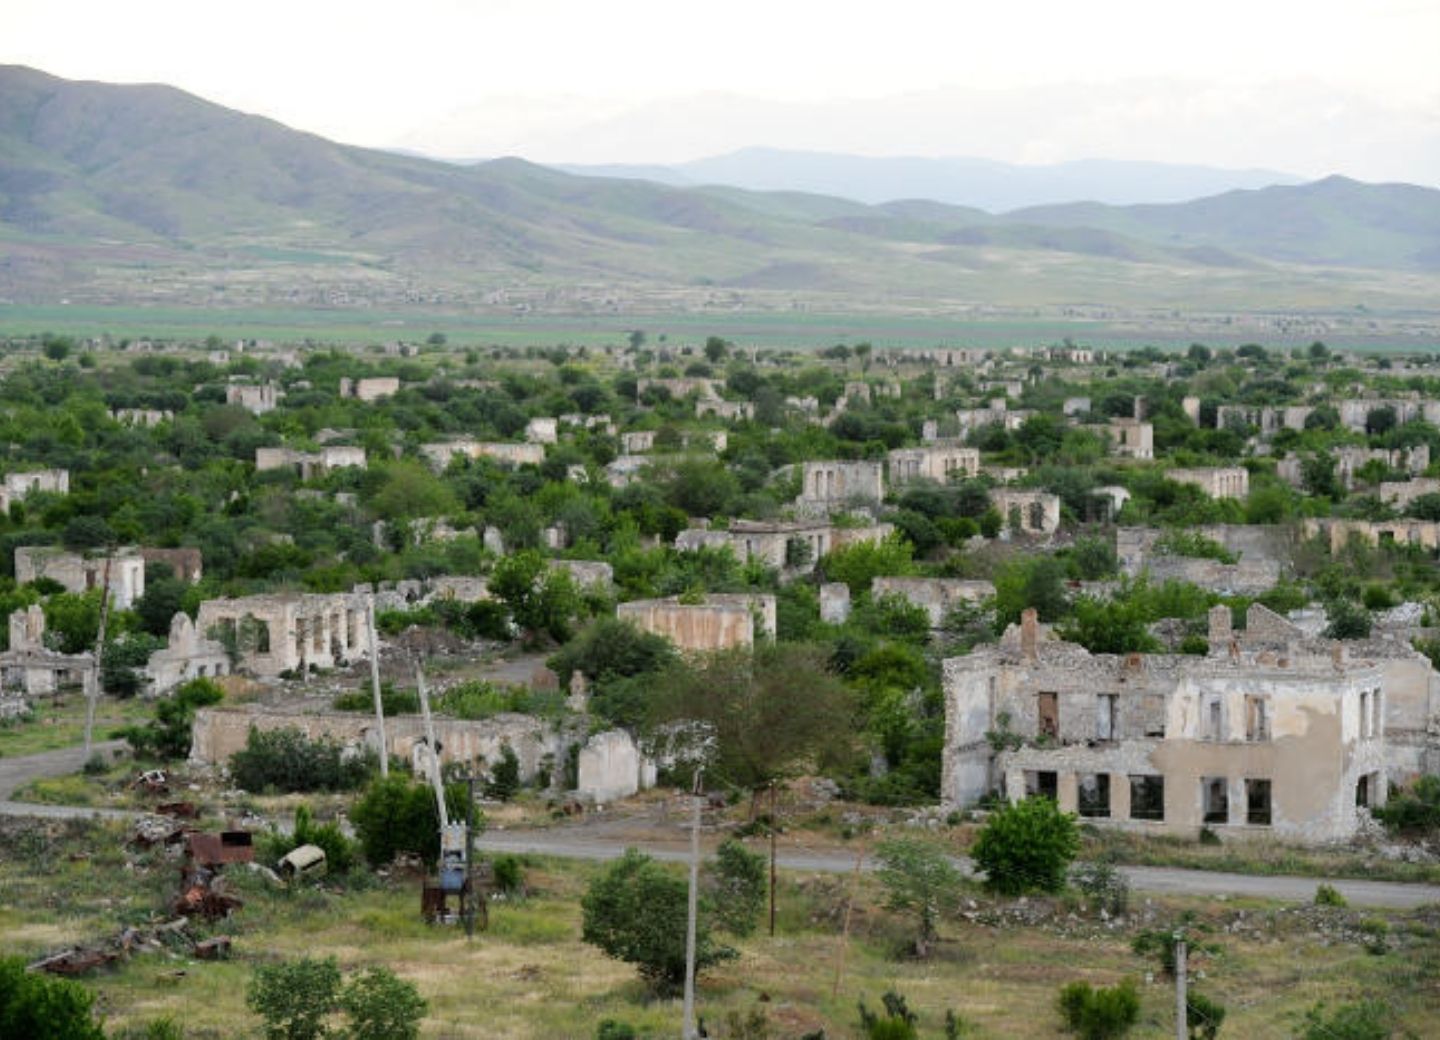 Будут предприняты меры в отношении лиц, занимающихся незаконной экономической и иной деятельностью на оккупированных территориях Азербайджана